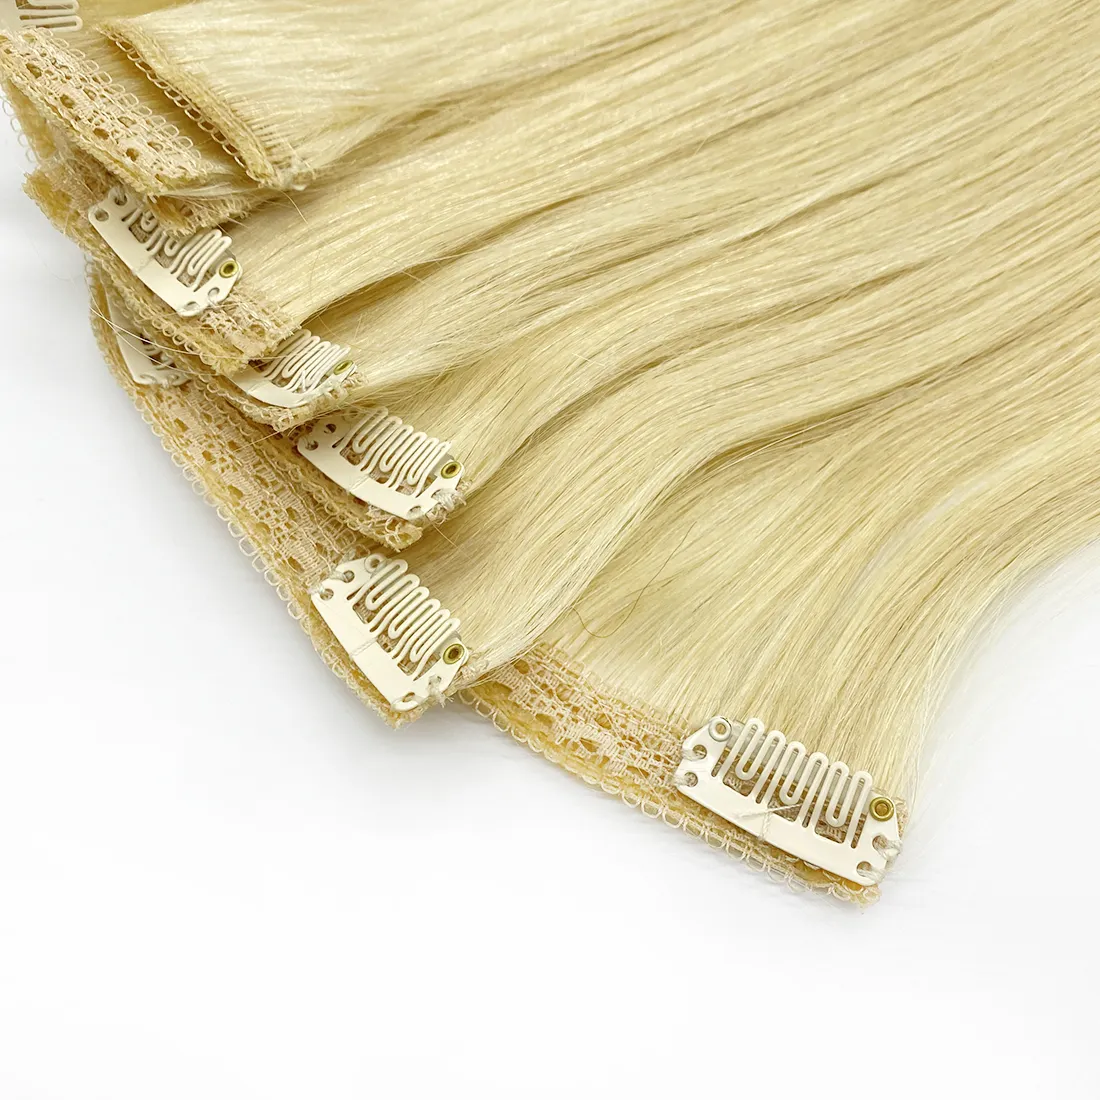 Großhandel Full Head Clip Ins Set Top Natural Remy 100% Echthaar Blonde Clip In Haar verlängerungen Für Weiße Frauen